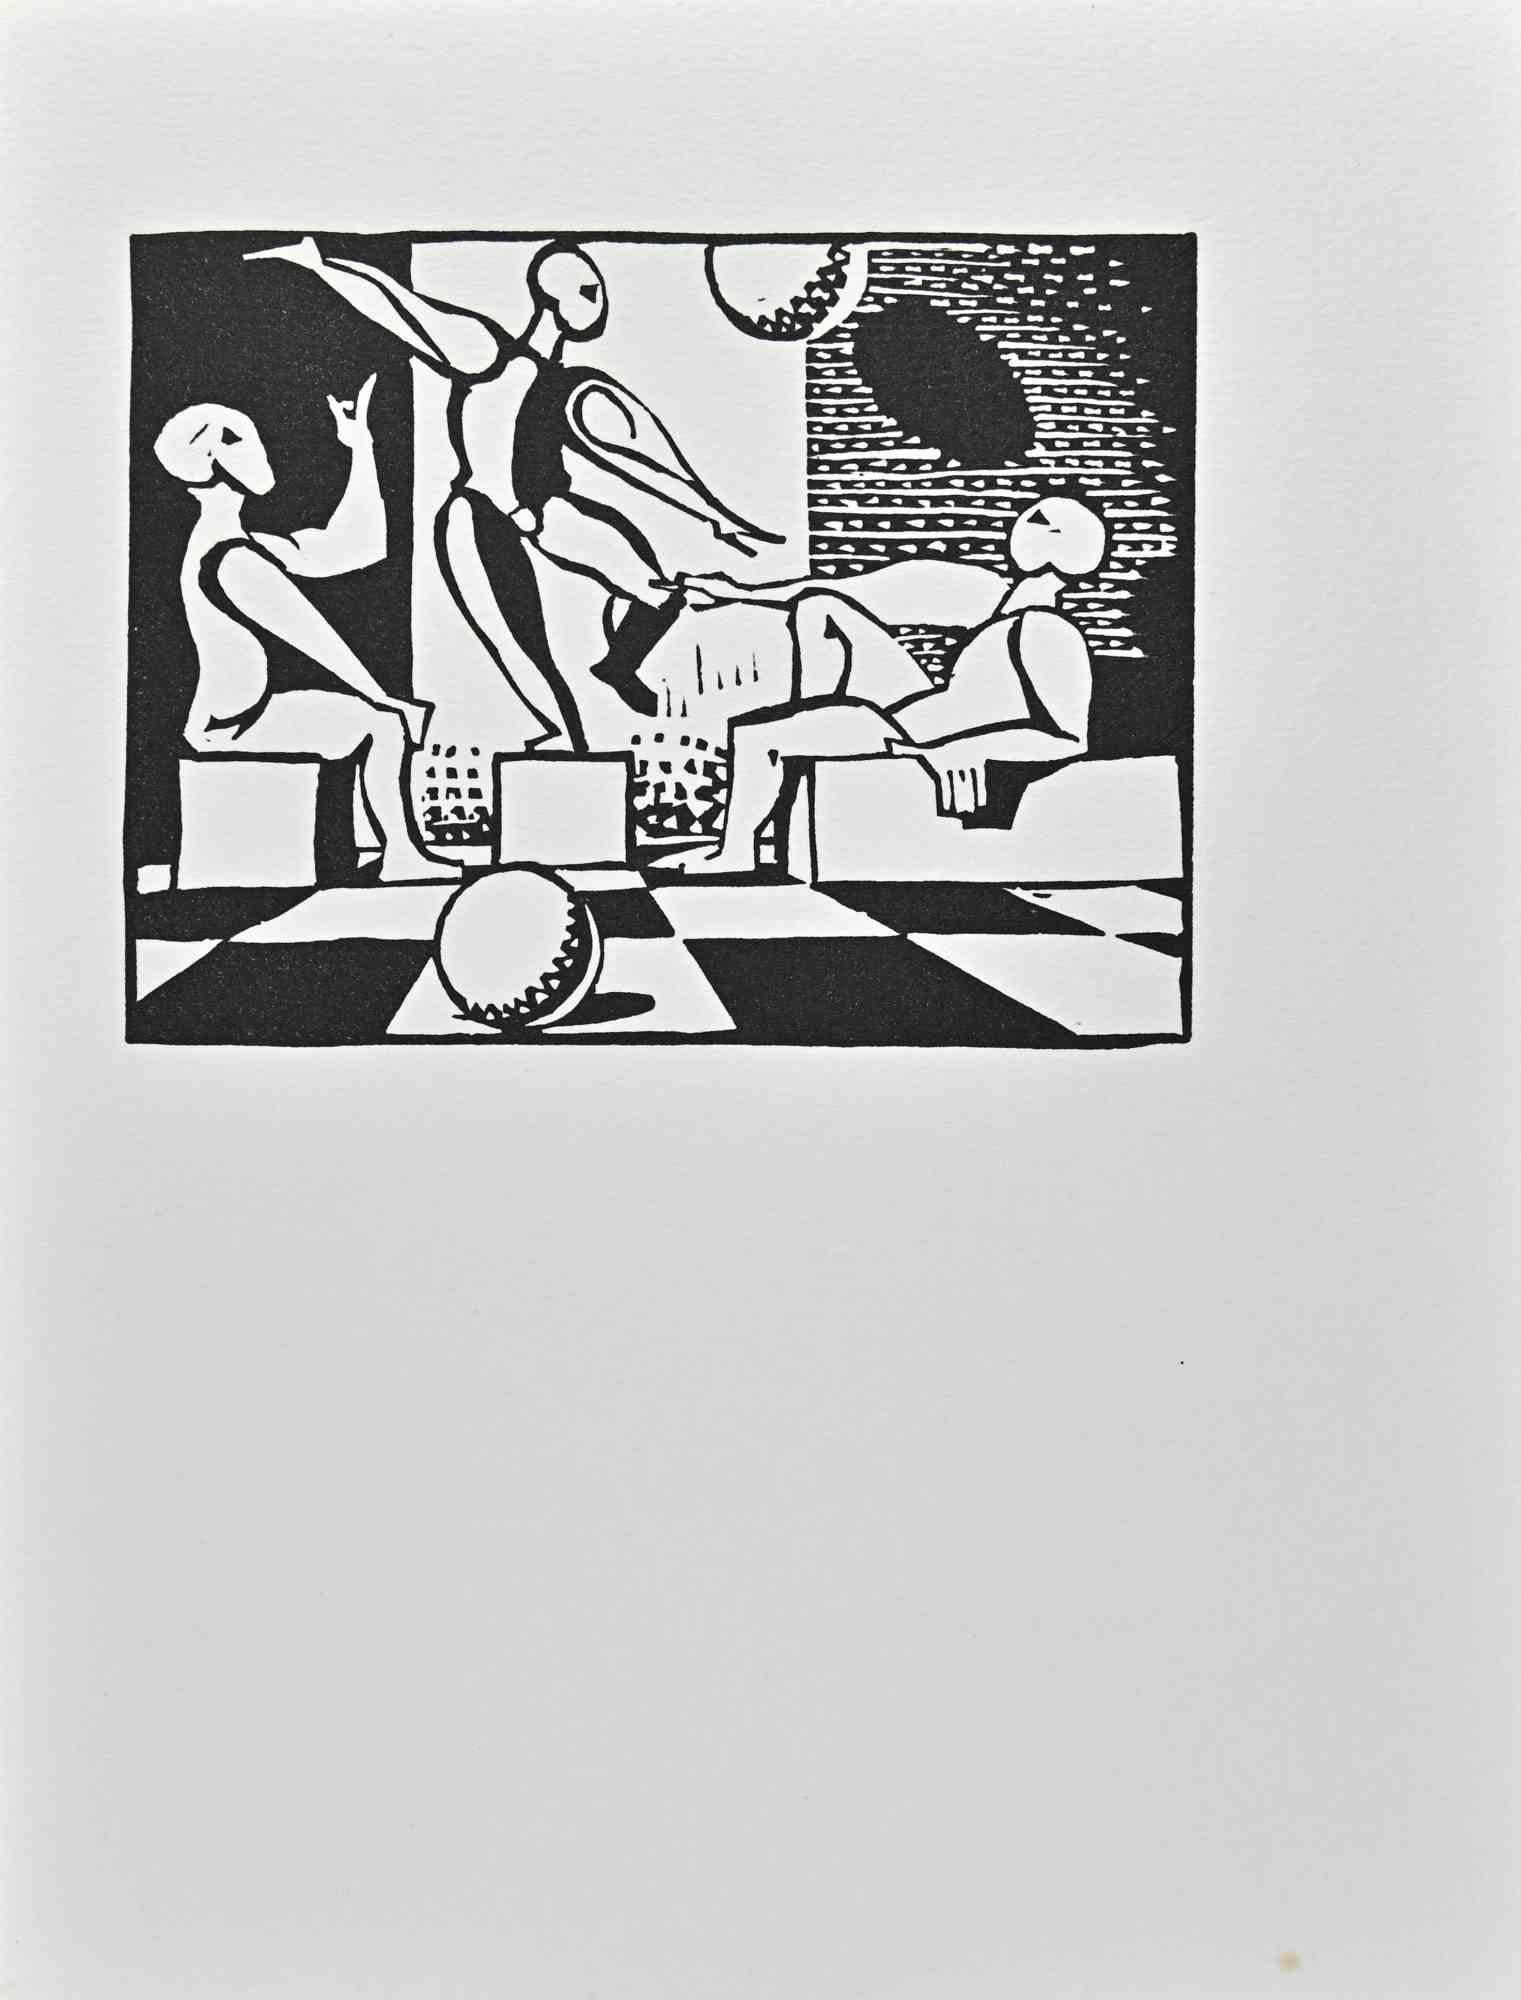 Danse, Dessin, Destin est une linogravure réalisée par Albert Flocon en 1987.

Bonnes conditions.

Appartient à la série " des Scénographies au Bauhaus ". Hommage à Oskar Schlemmer en plusiers tableaux", éd. "L'Atelier du Nombre d'Or", Paris, 1987".